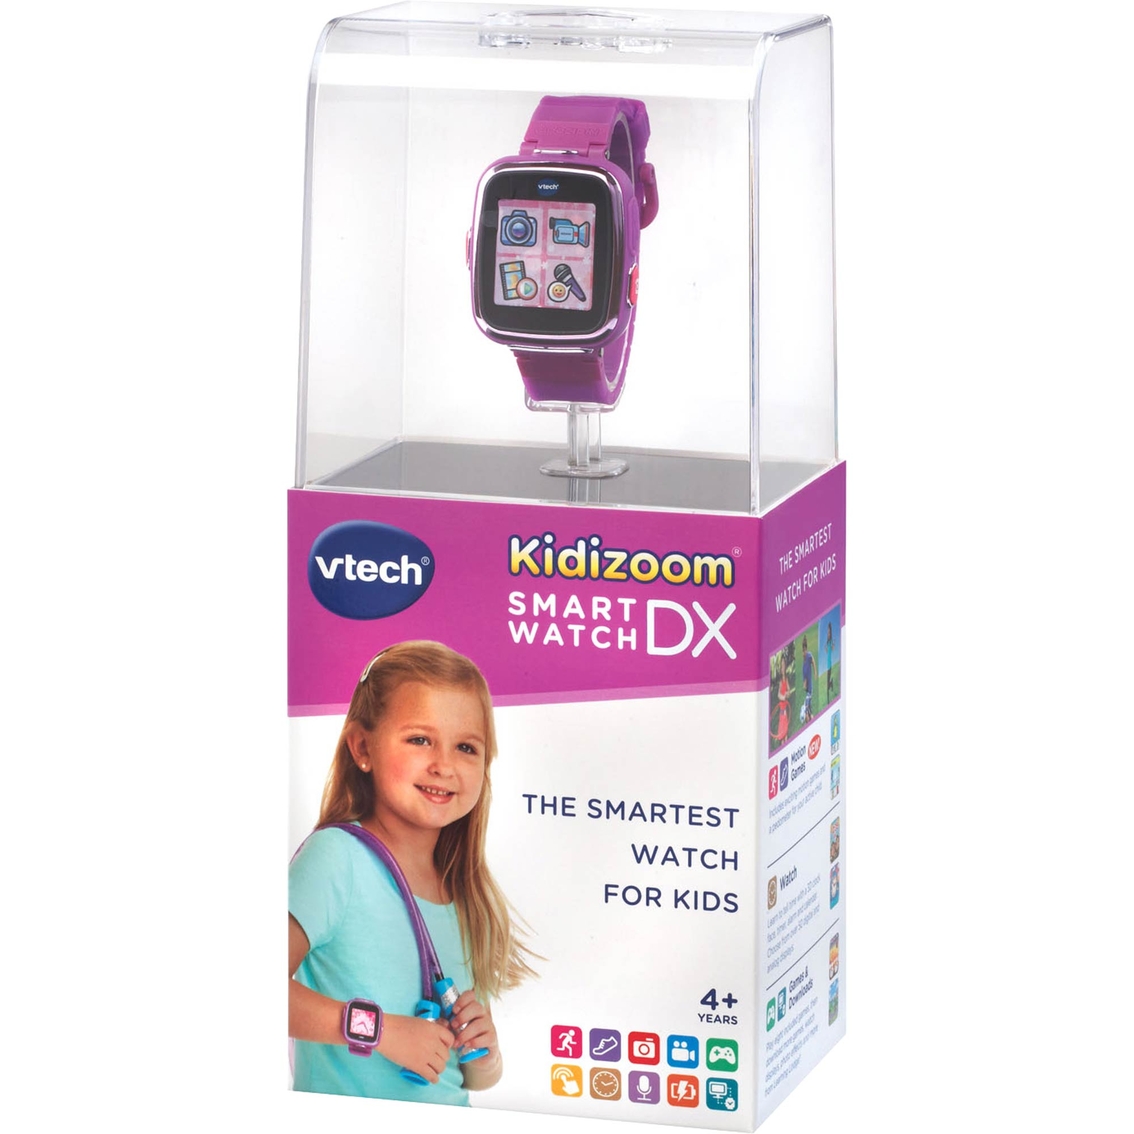 vtech kidizoom watch dx toy